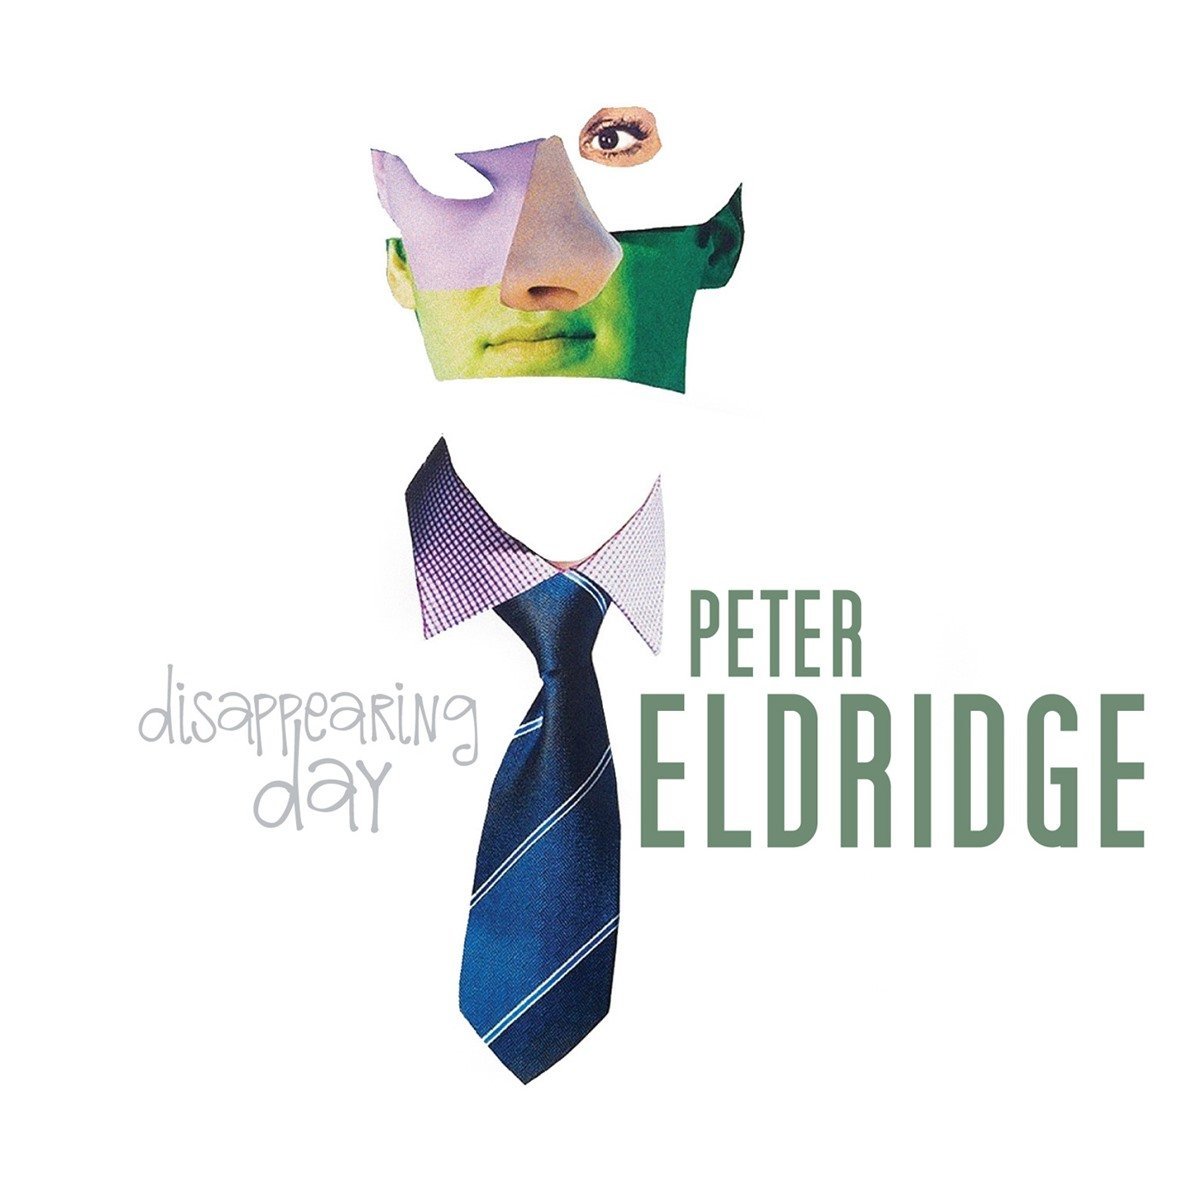 Peter Eldridge - Disappearing Day